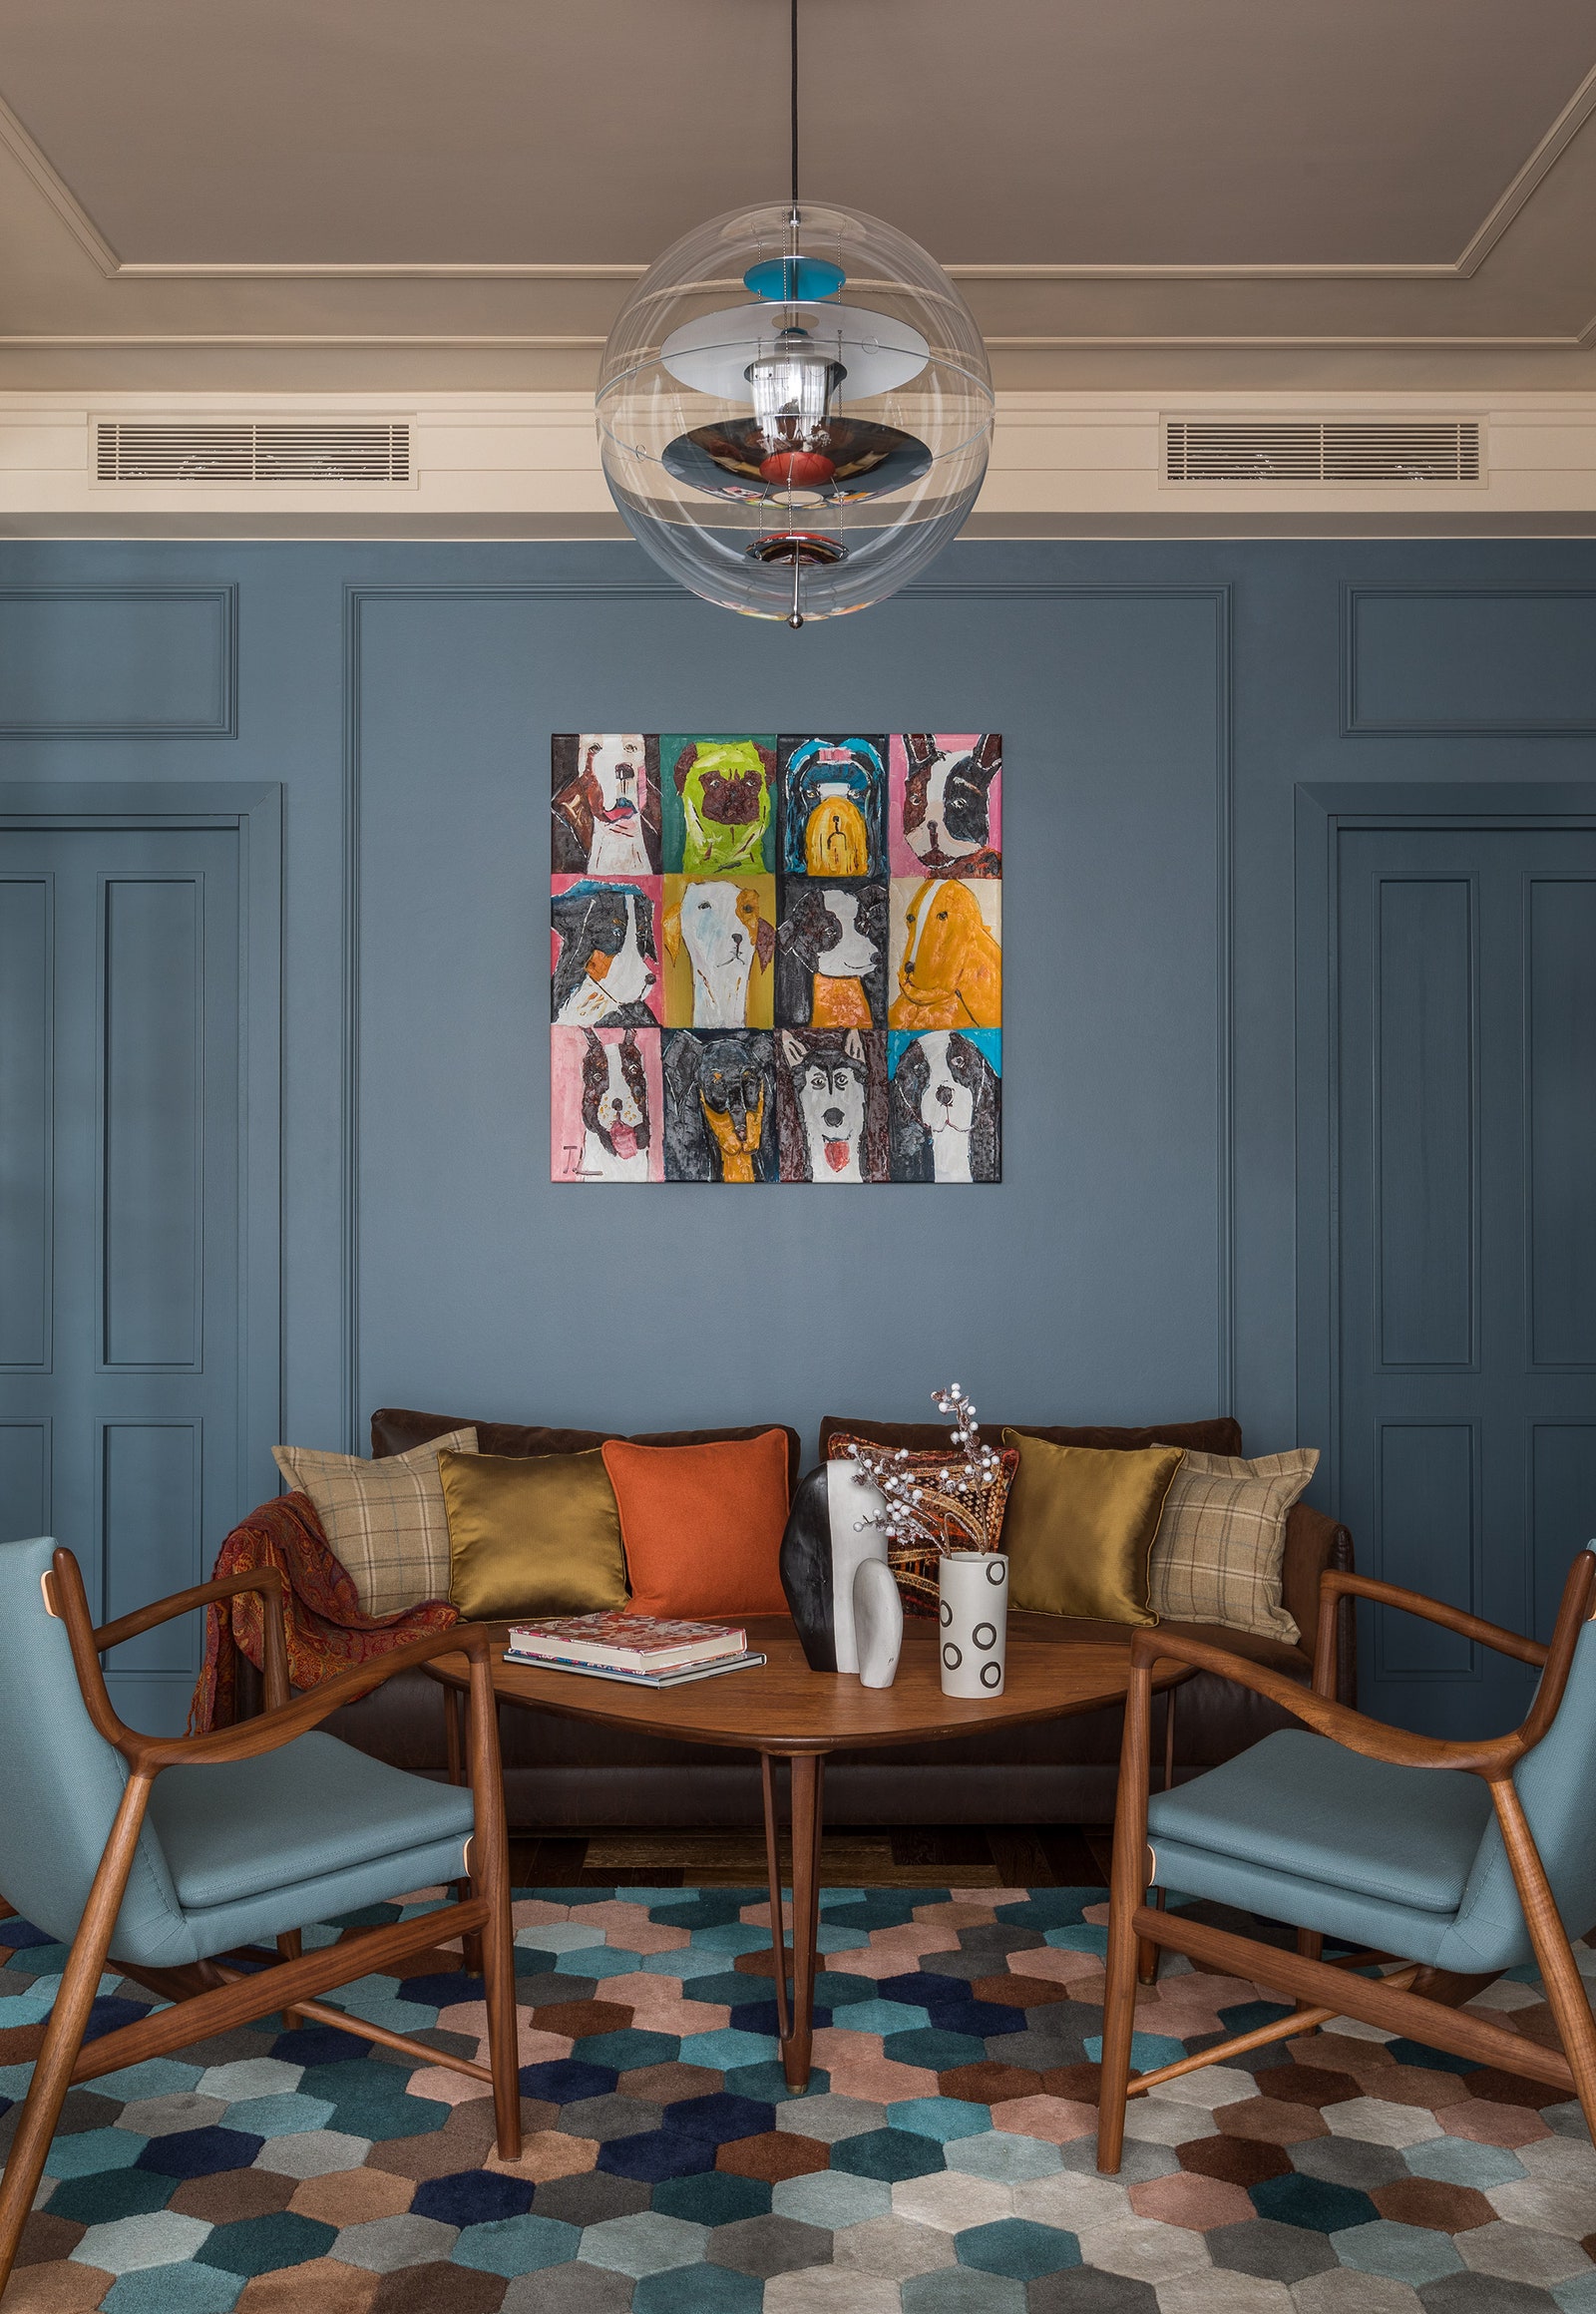 Картина “Cобаки” из галереи Кати Гердт диван Instyle Дания предметы декора Repeat Story.